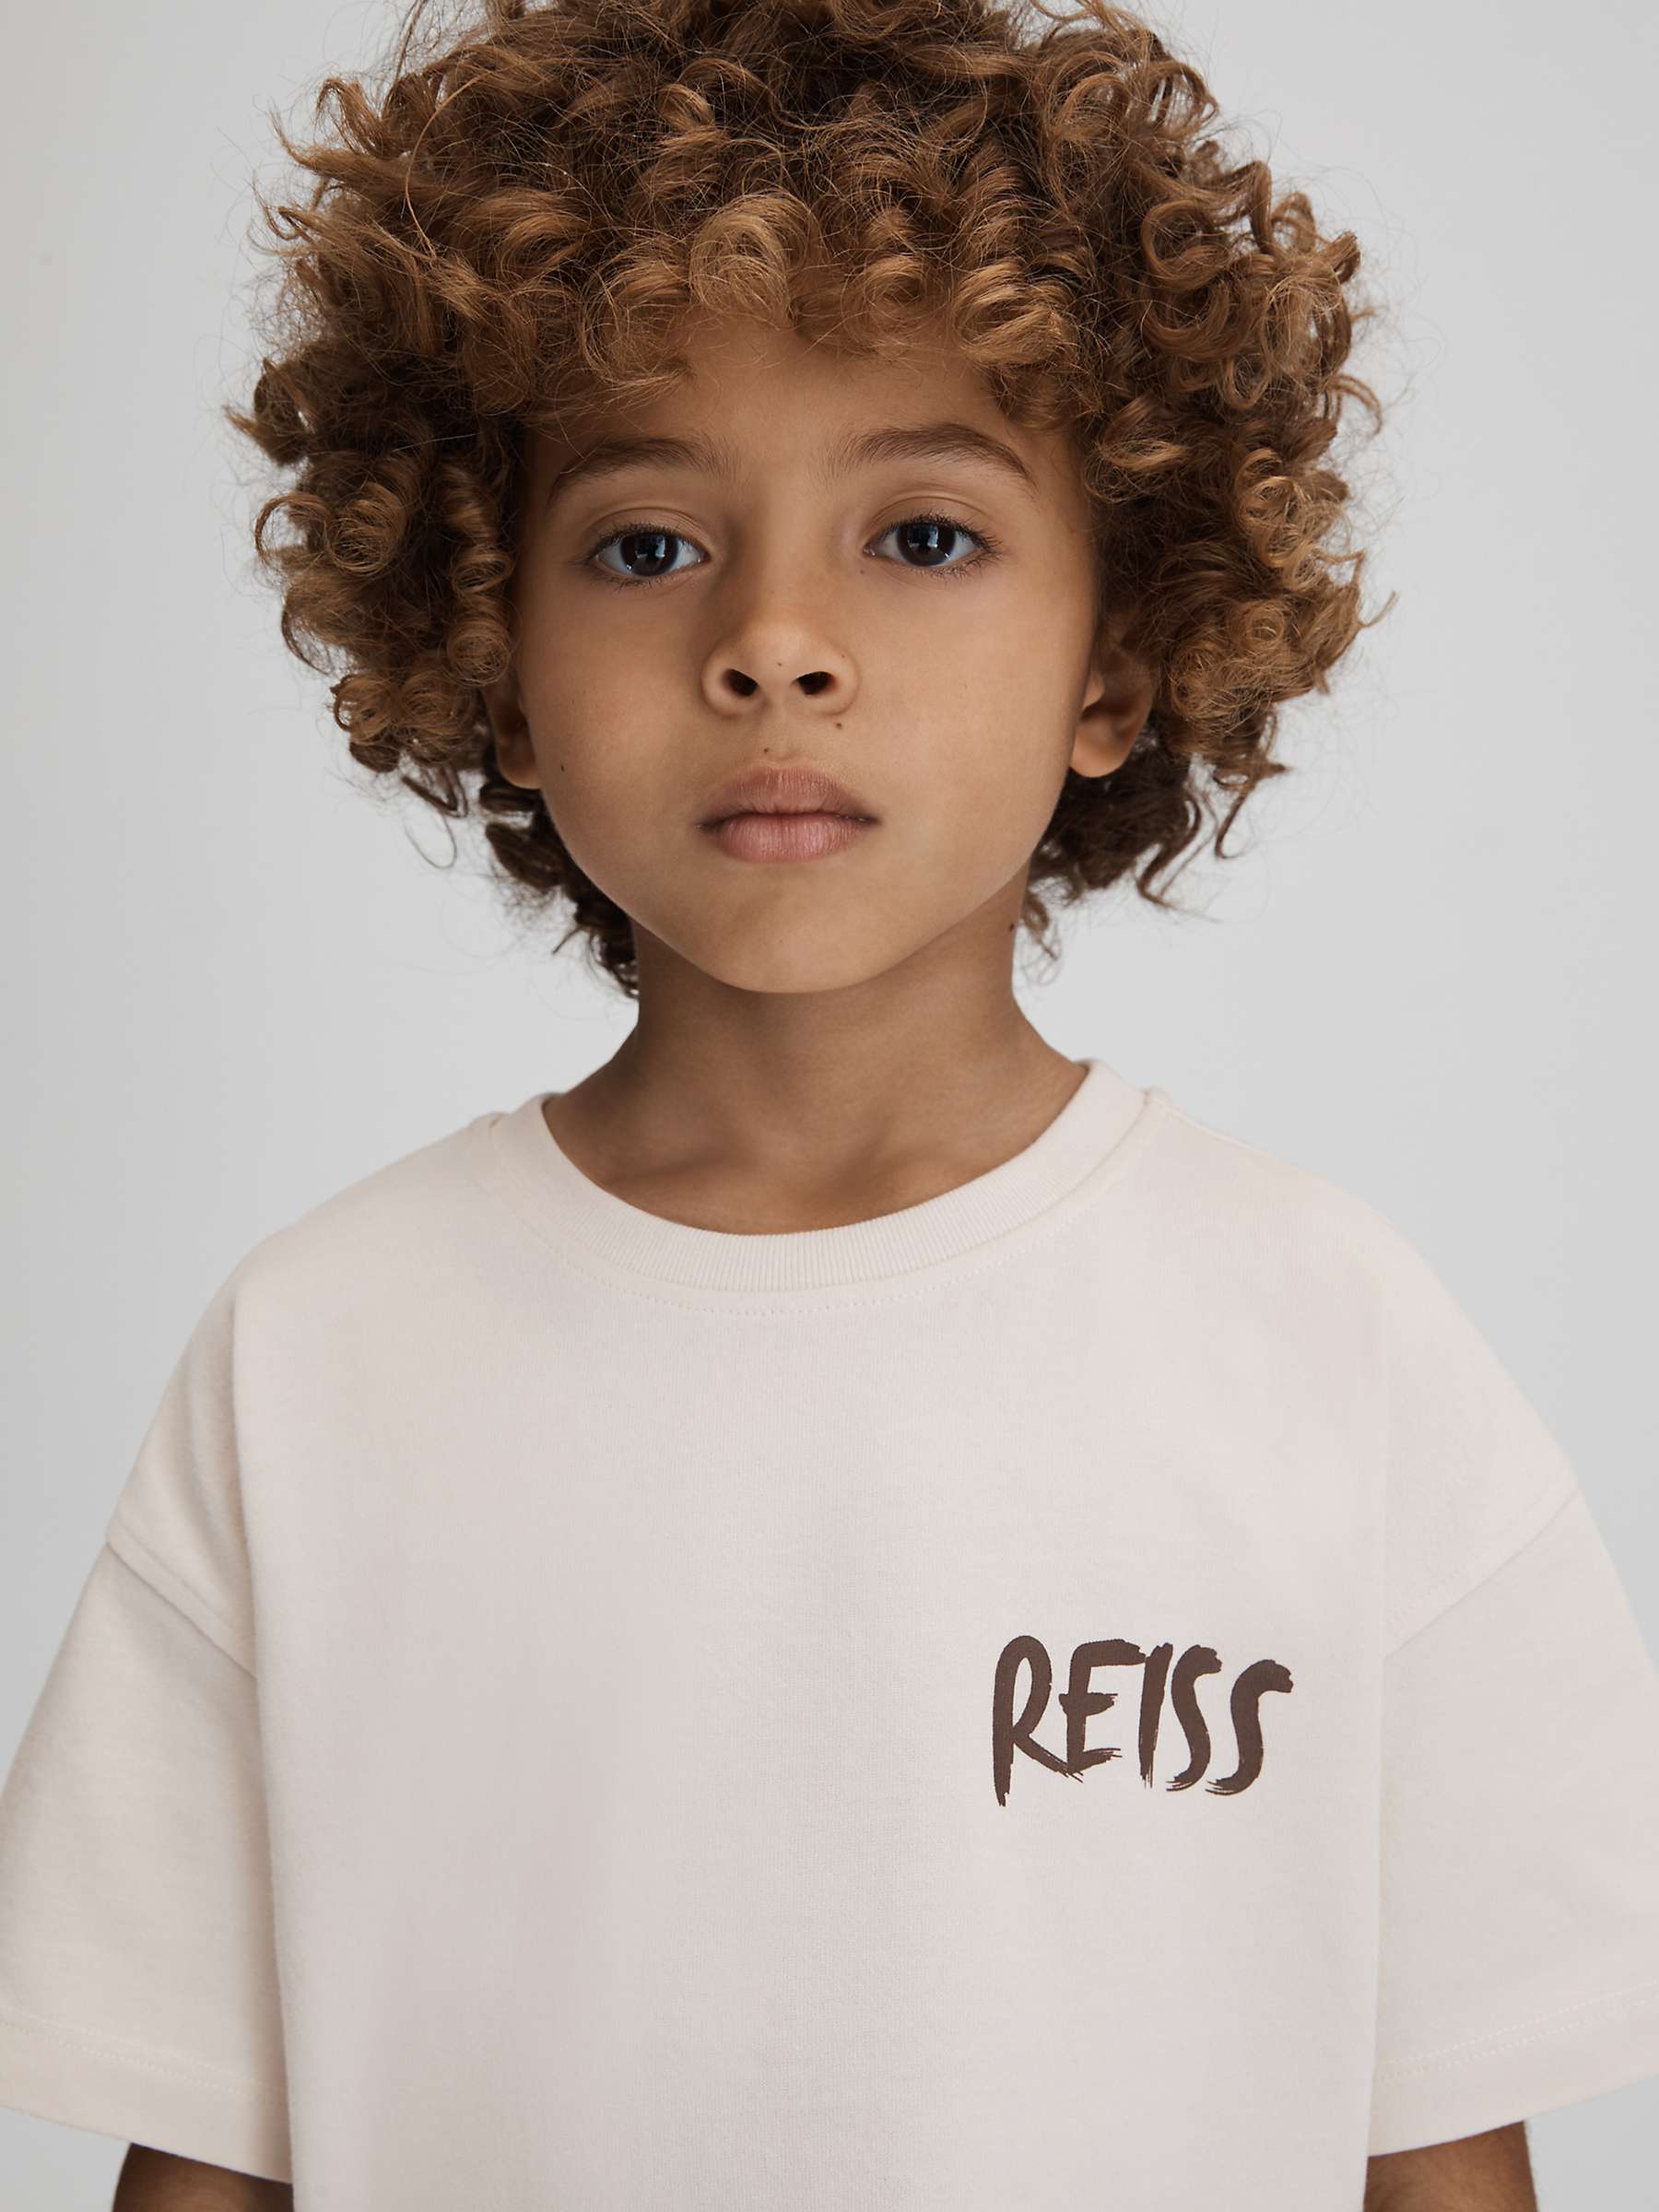 Buy Reiss Kids' Abbott Paintstroke Logo T-Shirt Online at johnlewis.com